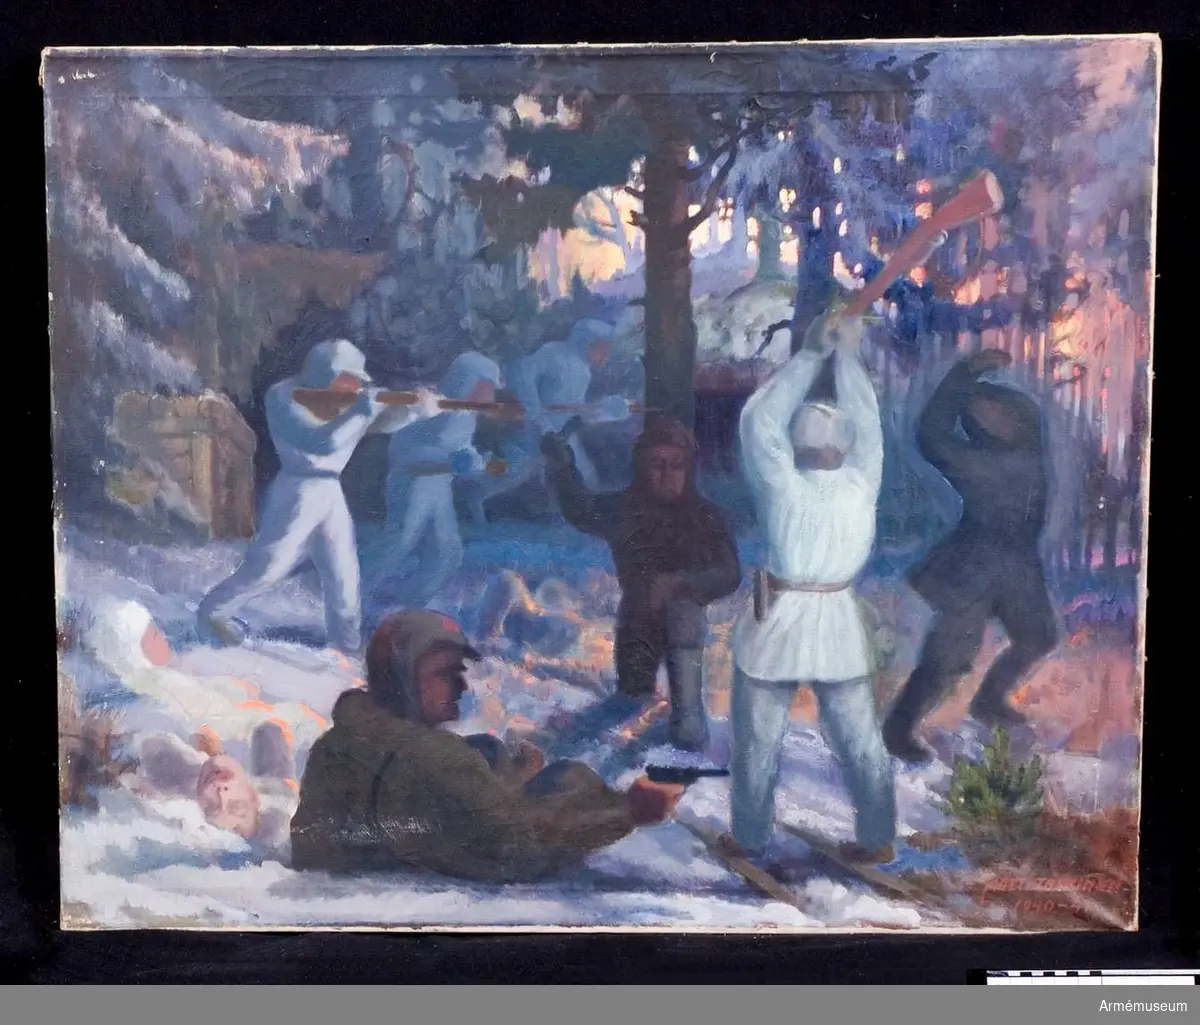 Grupp M I.
Oljemålning utförd av Matti Taskinen 1941 "Närstrid i skog".